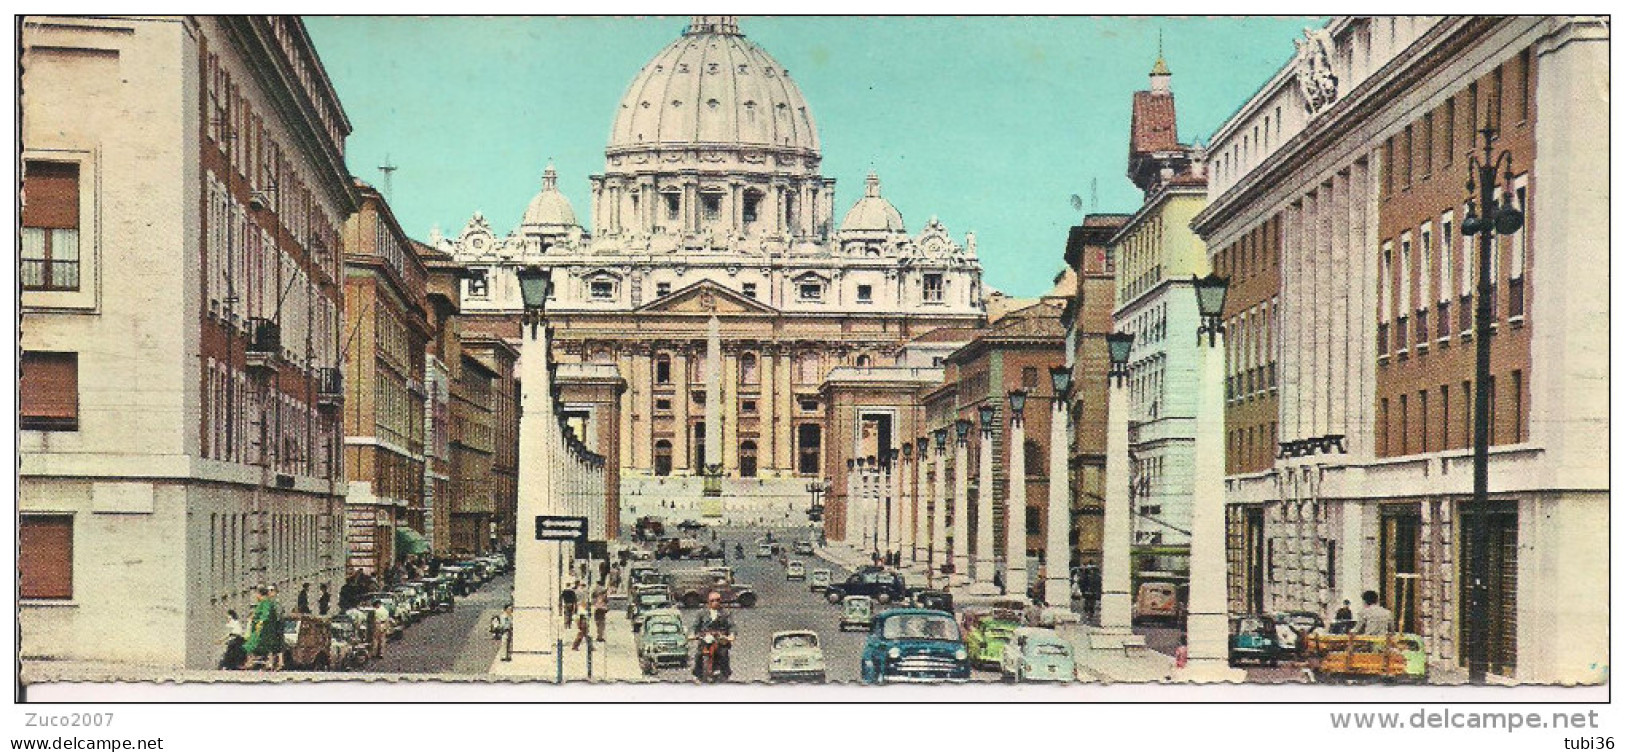 ROMA, VIA DELLA CONCILIAZIONE , COLORI  PANORAMICA, 1958, ROMA - BOLOGNA - Viste Panoramiche, Panorama